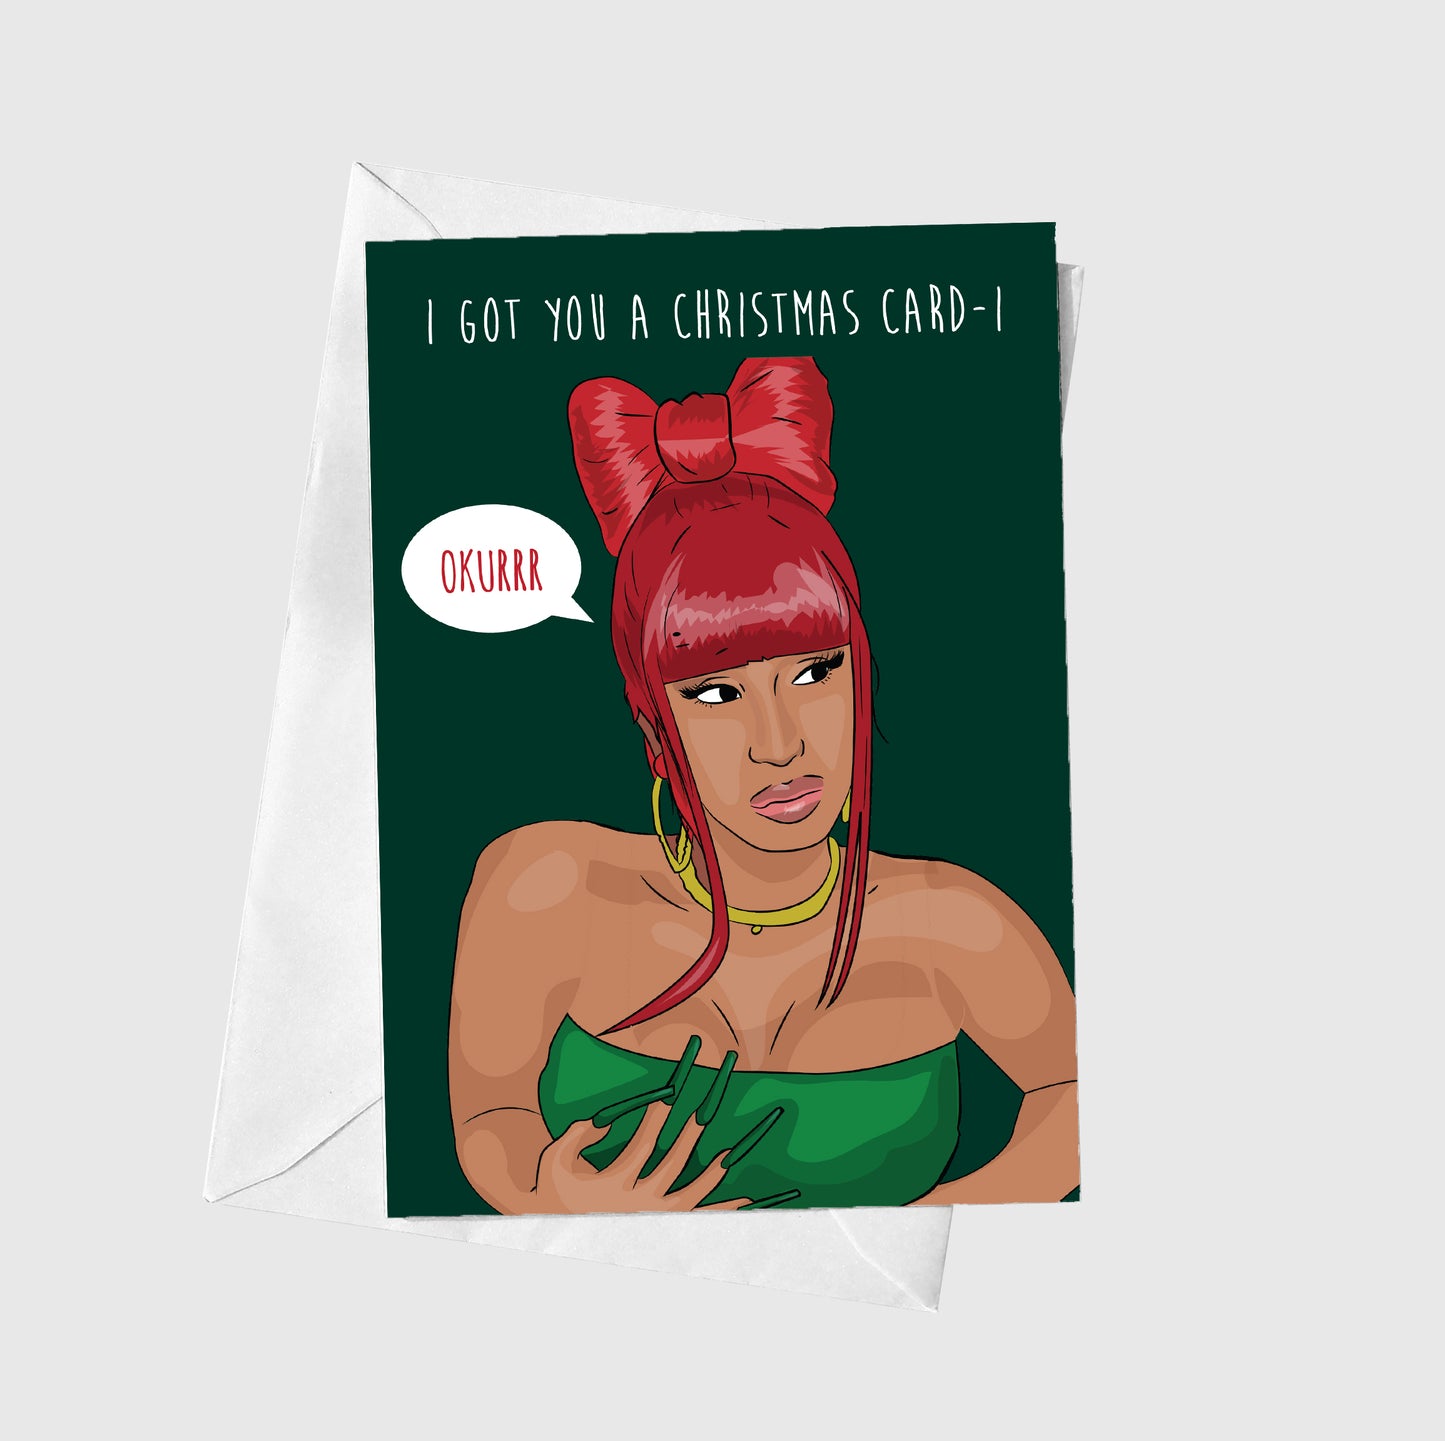 I Got You A Christmas Card-I, Okurrr